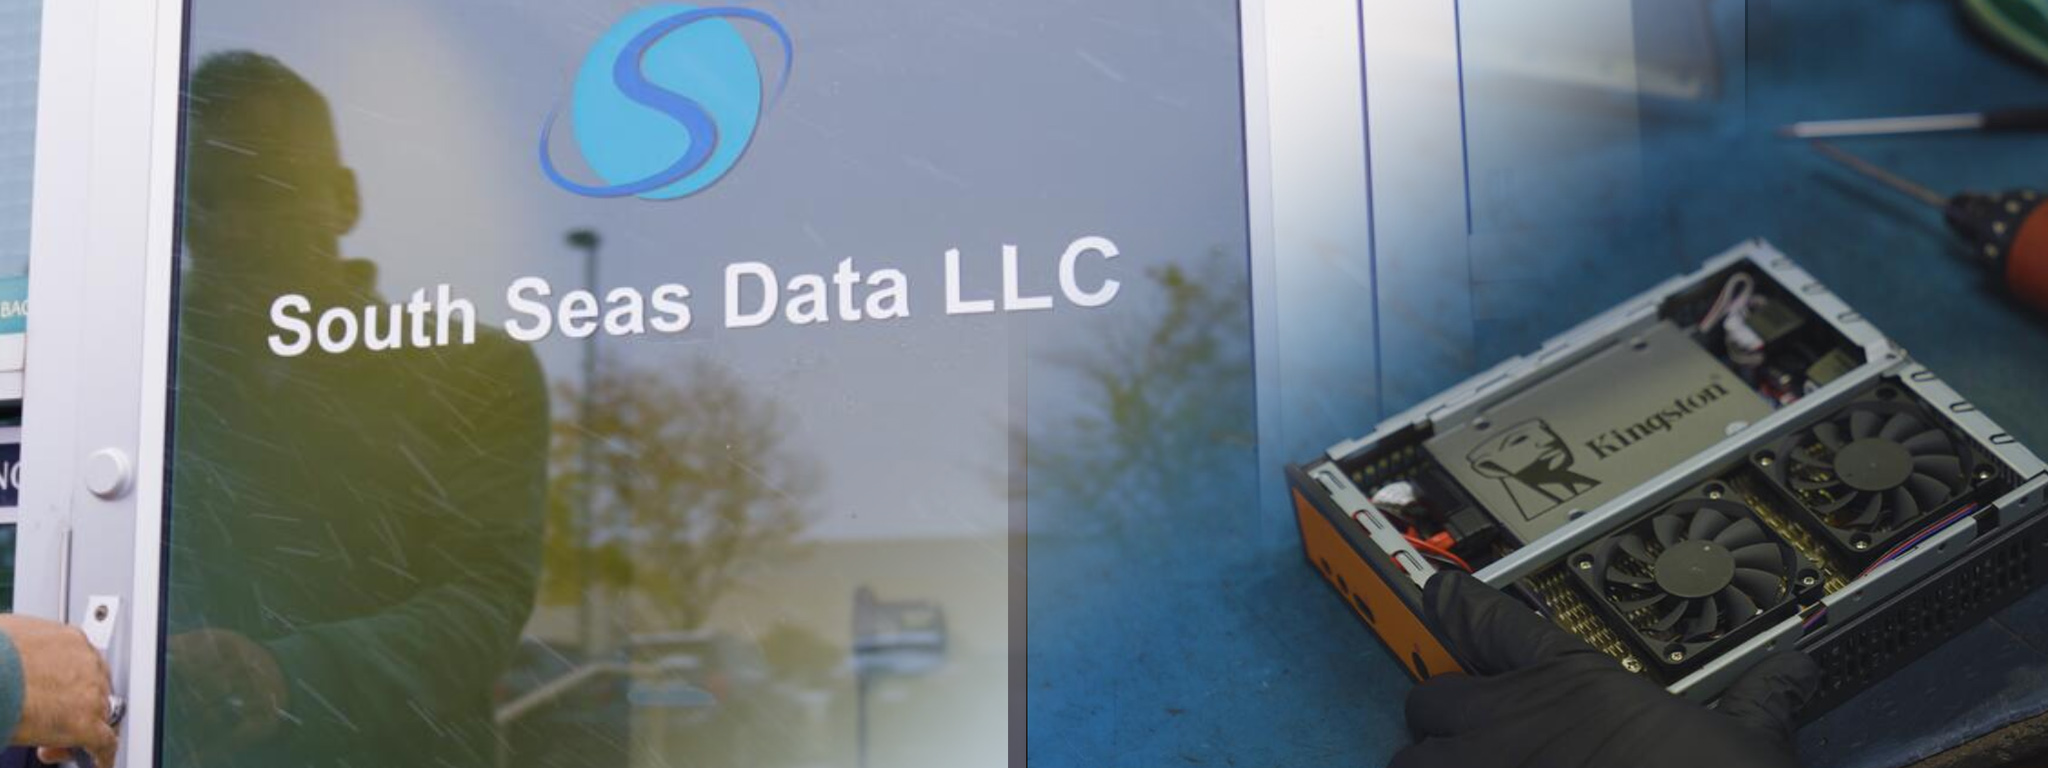 La puerta principal de la sede de South Seas Data LLC, y una imagen superpuesta de un sistema que destaca por su SSD de Kingston.